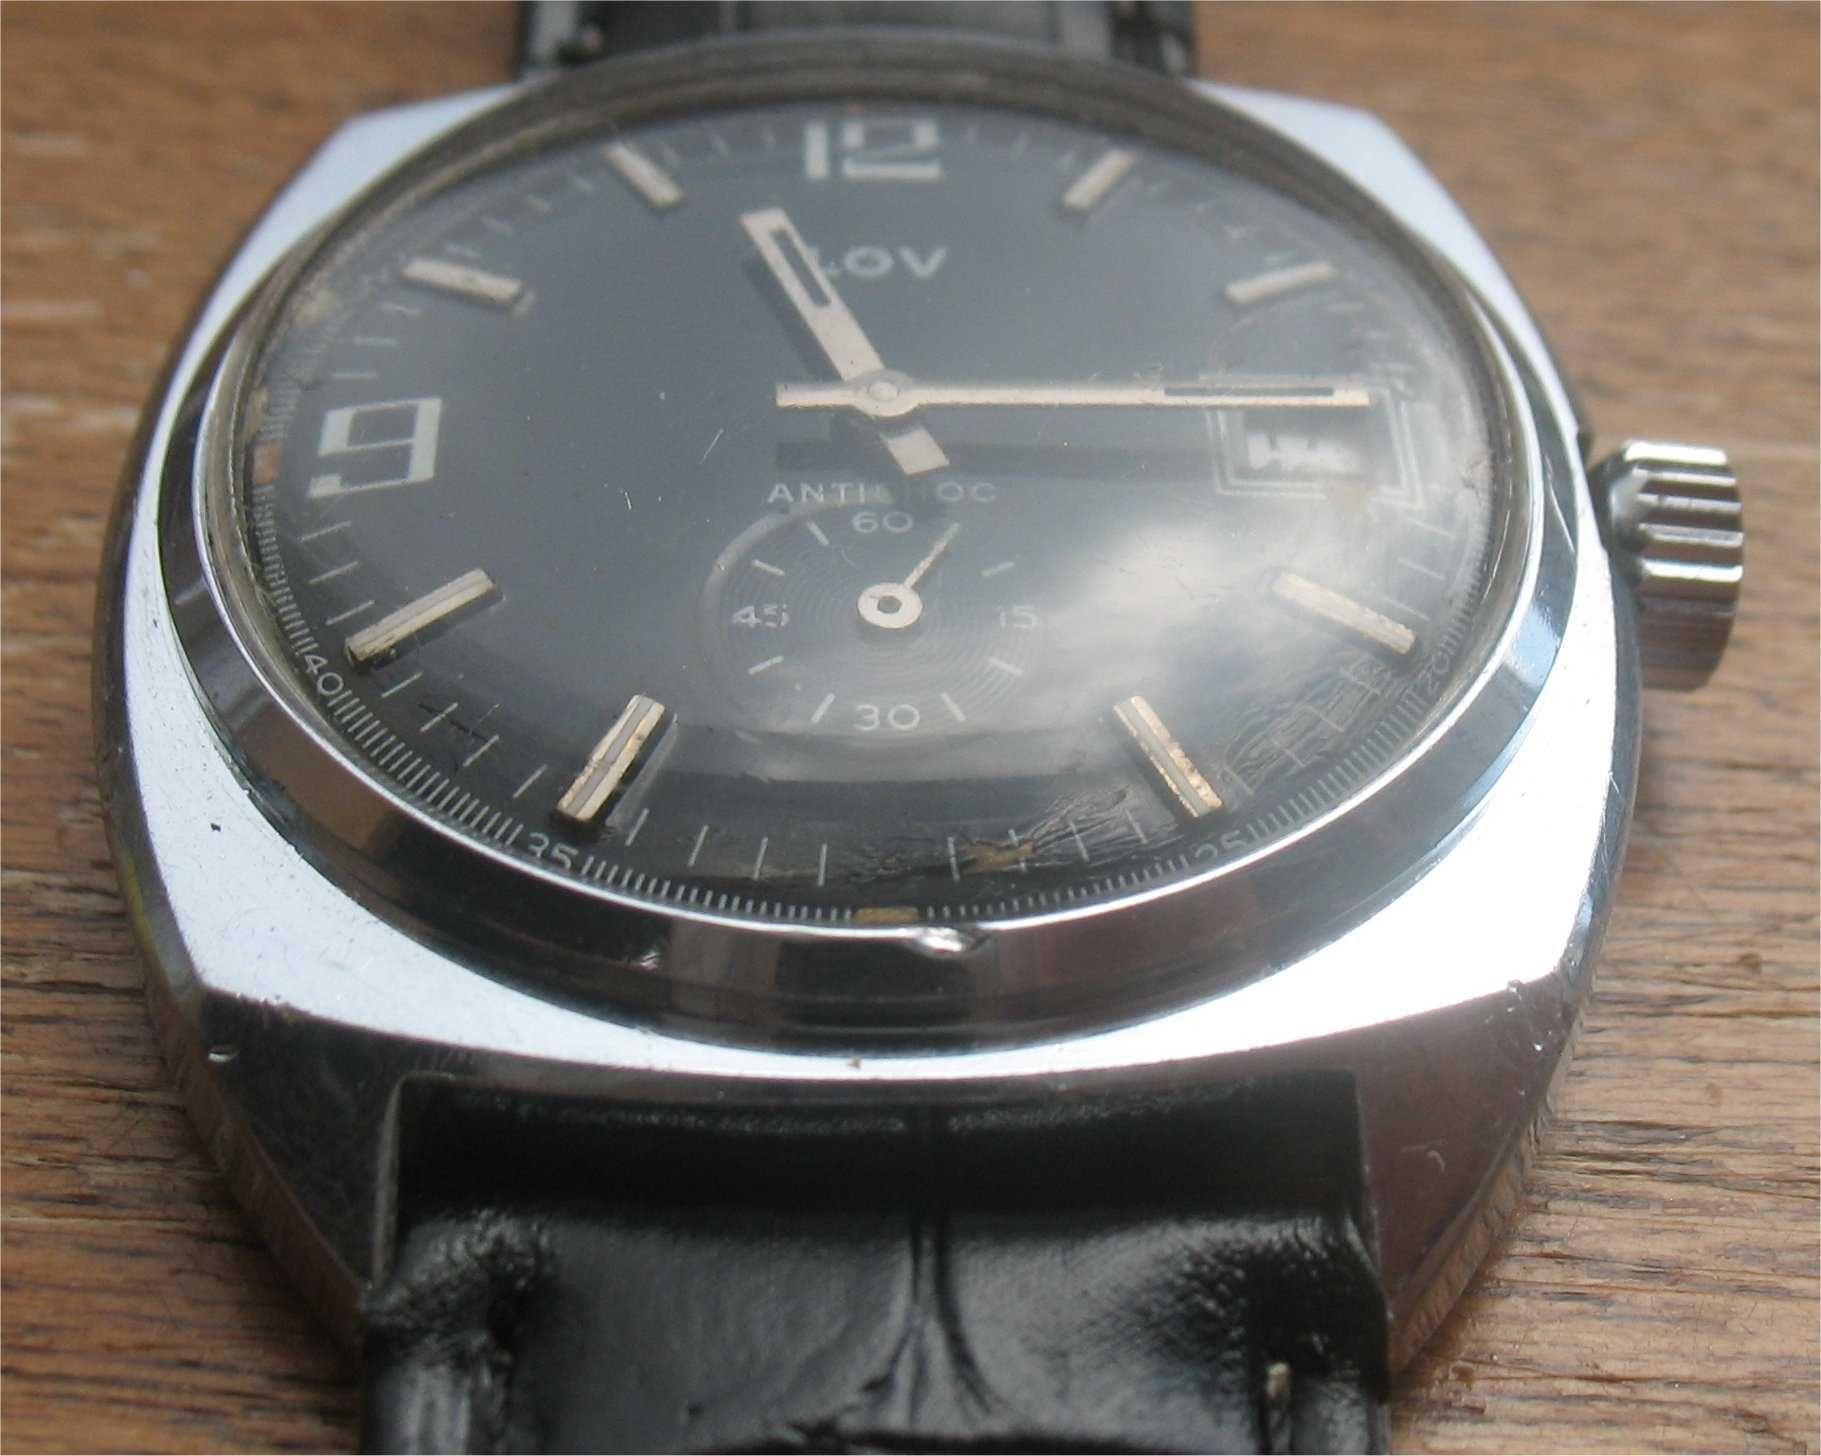 Relógio Vintage de Corda - Lov Antichoc